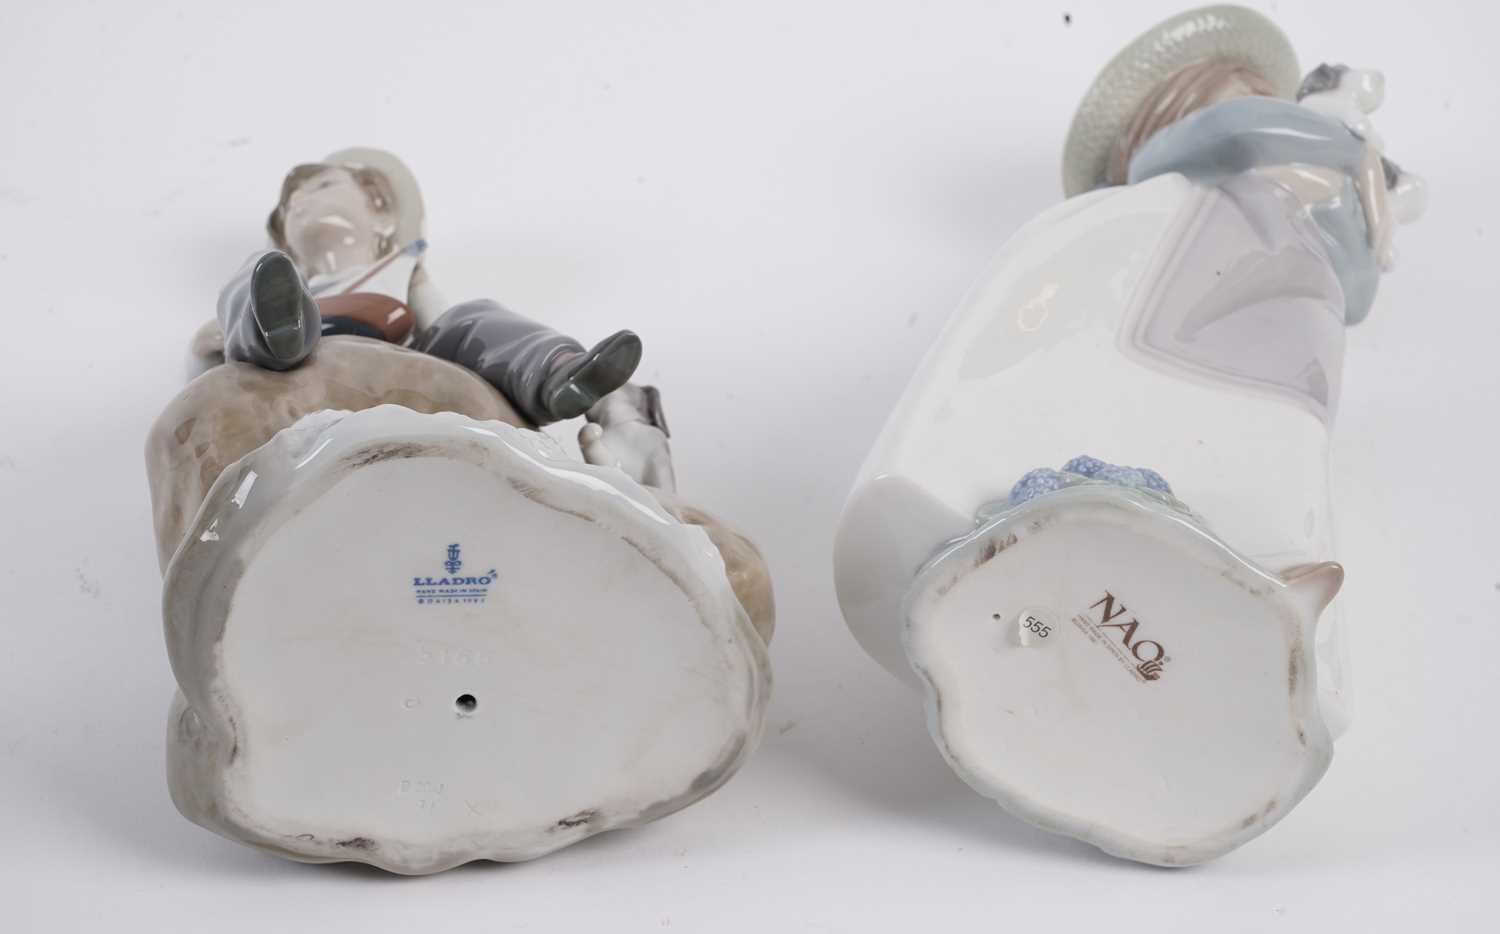 Lladro decorative ceramic figures - Image 3 of 9